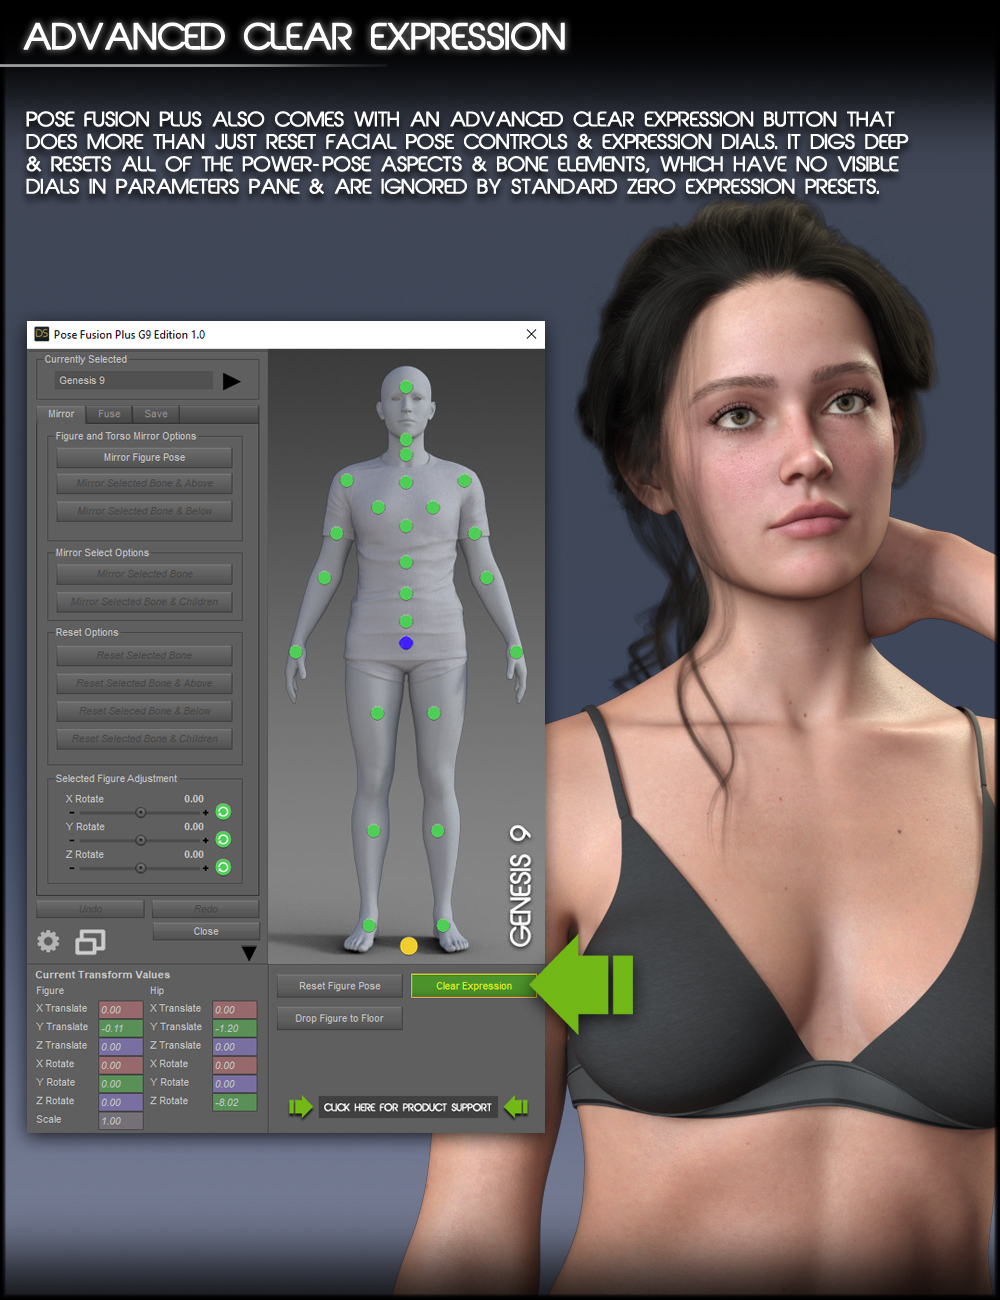 Pose Fusion Plus Genesis 9 Edition by: Zev0bitwelder, 3D Models by Daz 3D